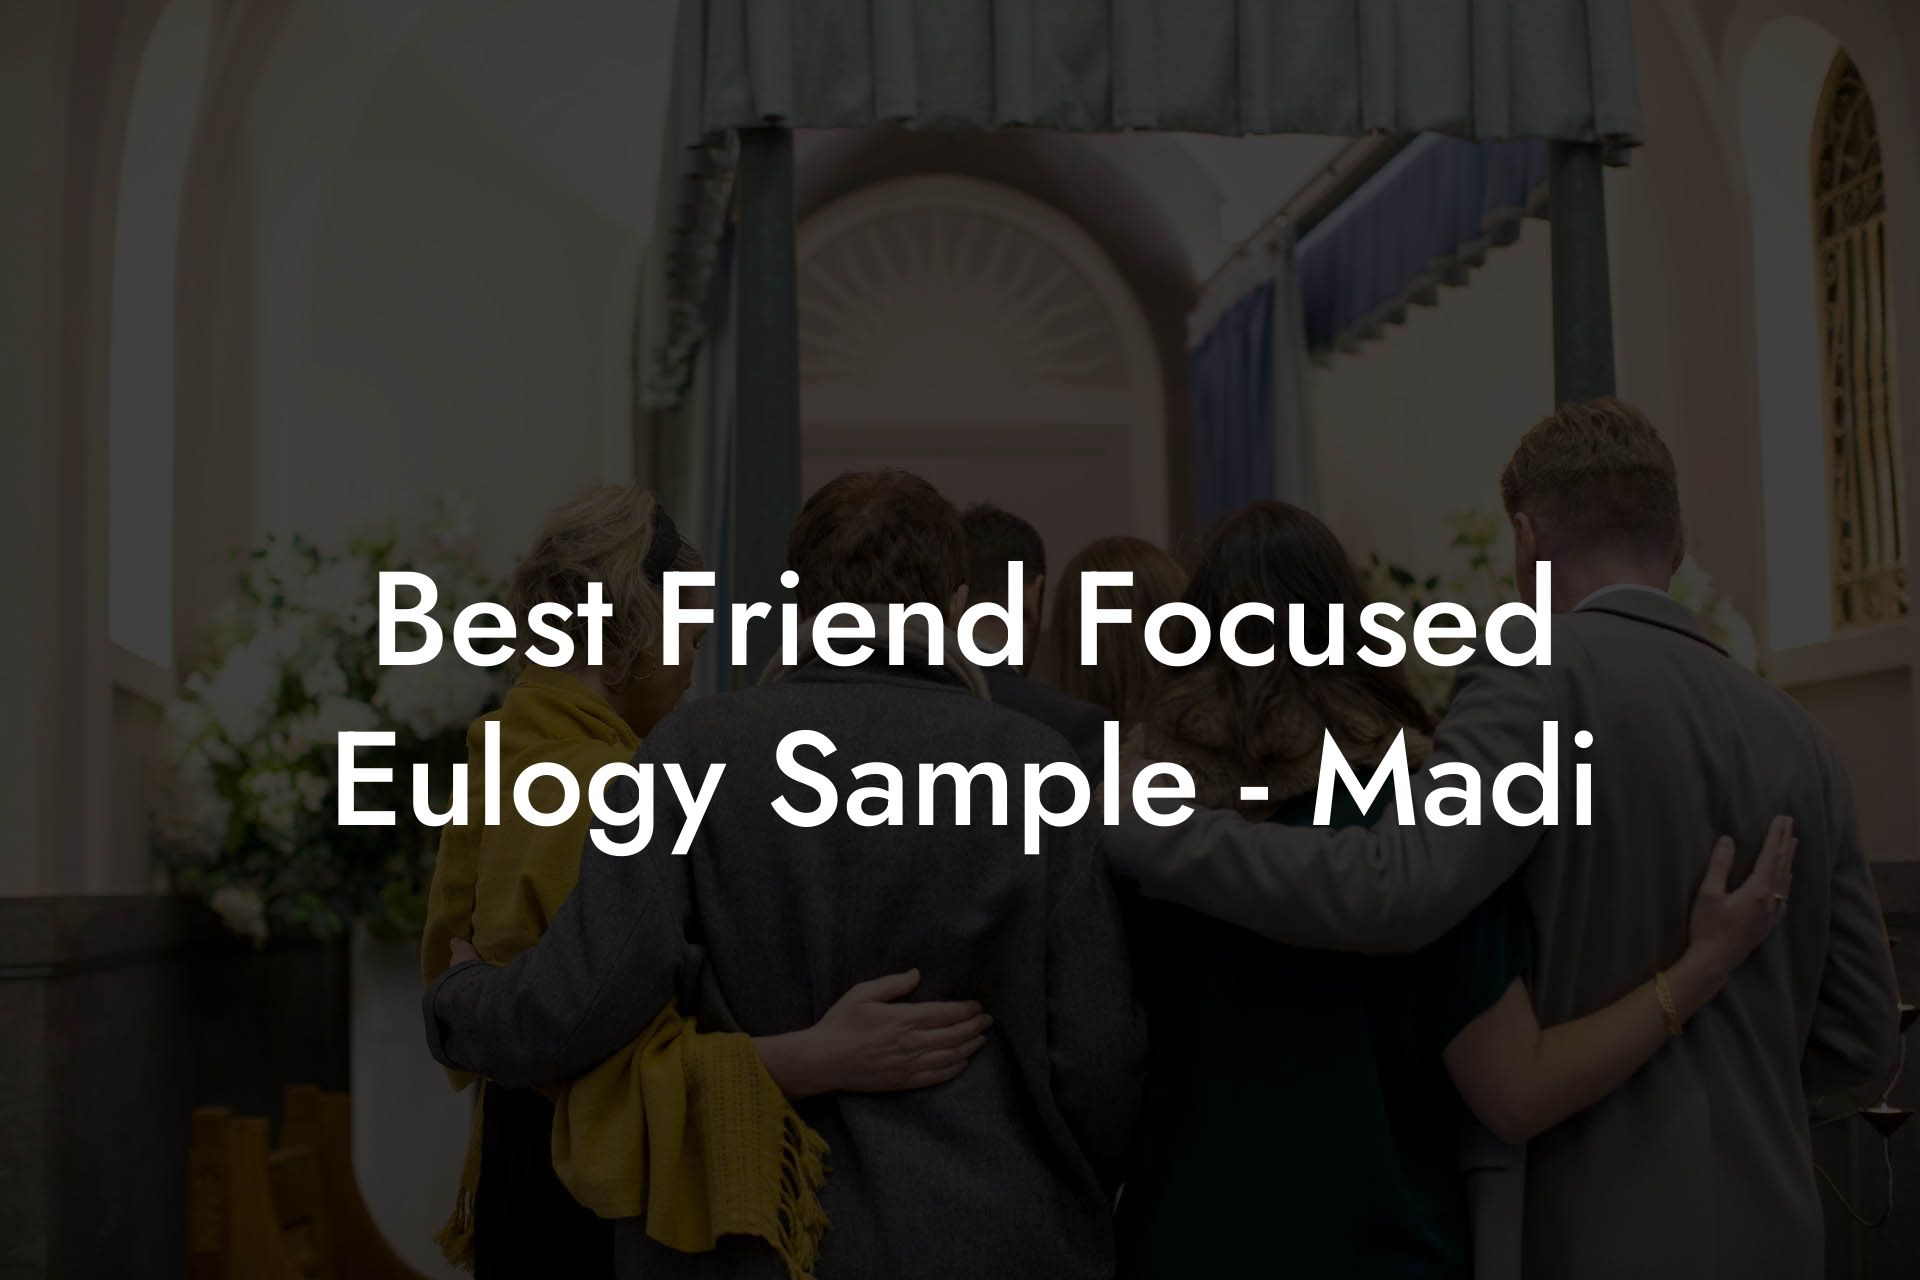 Best Friend Focused Eulogy Sample - Madi